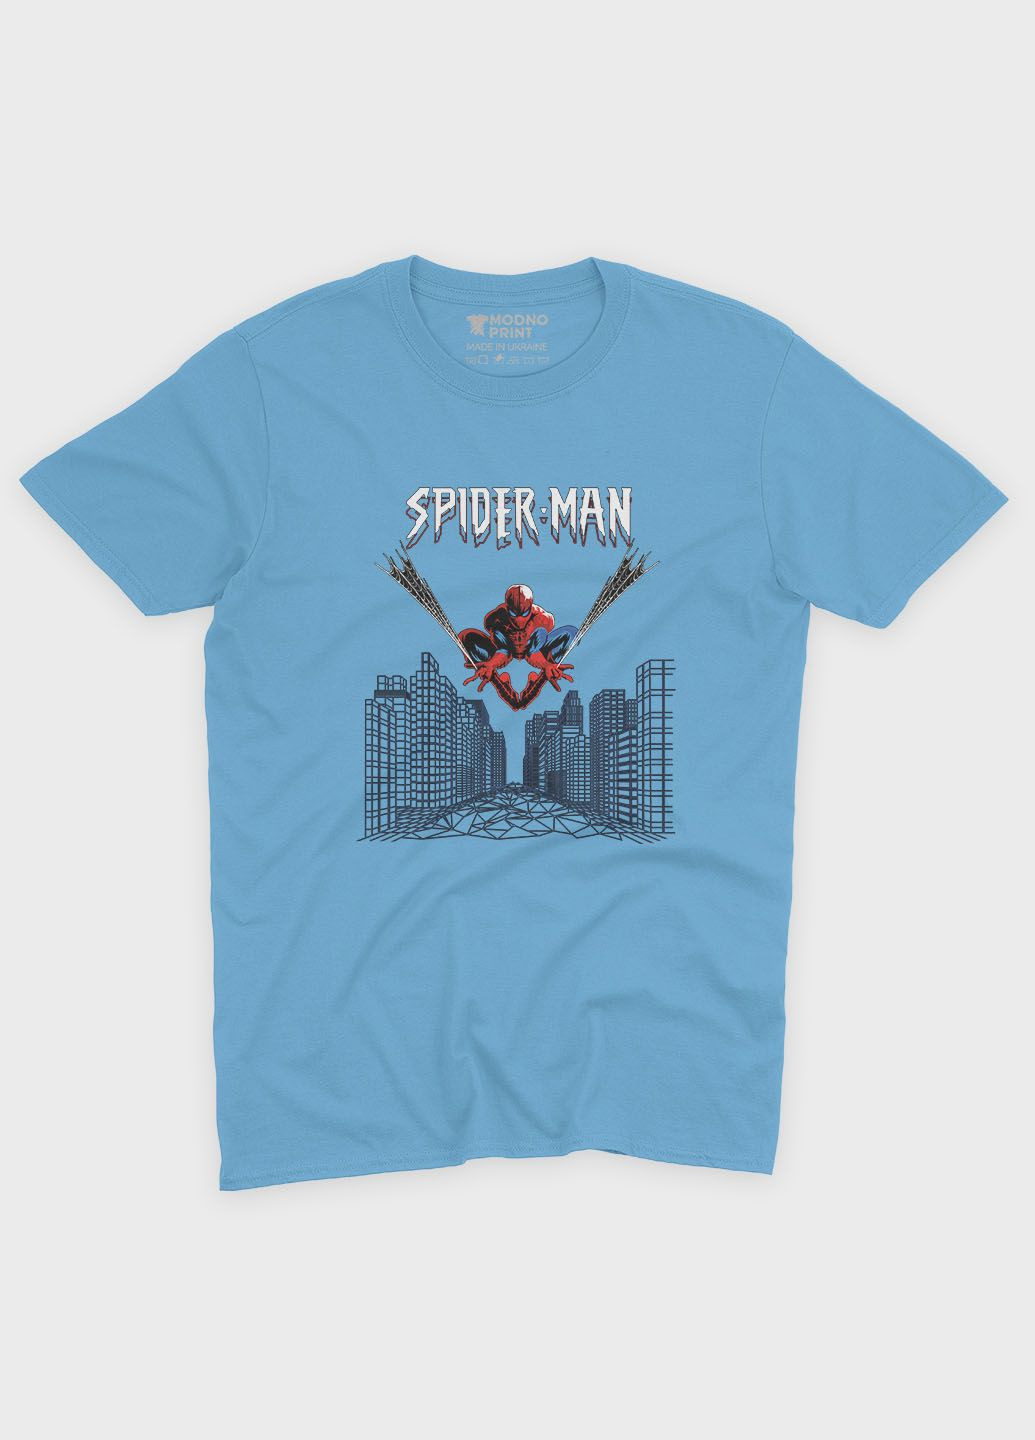 Голубая демисезонная футболка для девочки с принтом супергероя - человек-паук (ts001-1-lbl-006-014-038-g) Modno